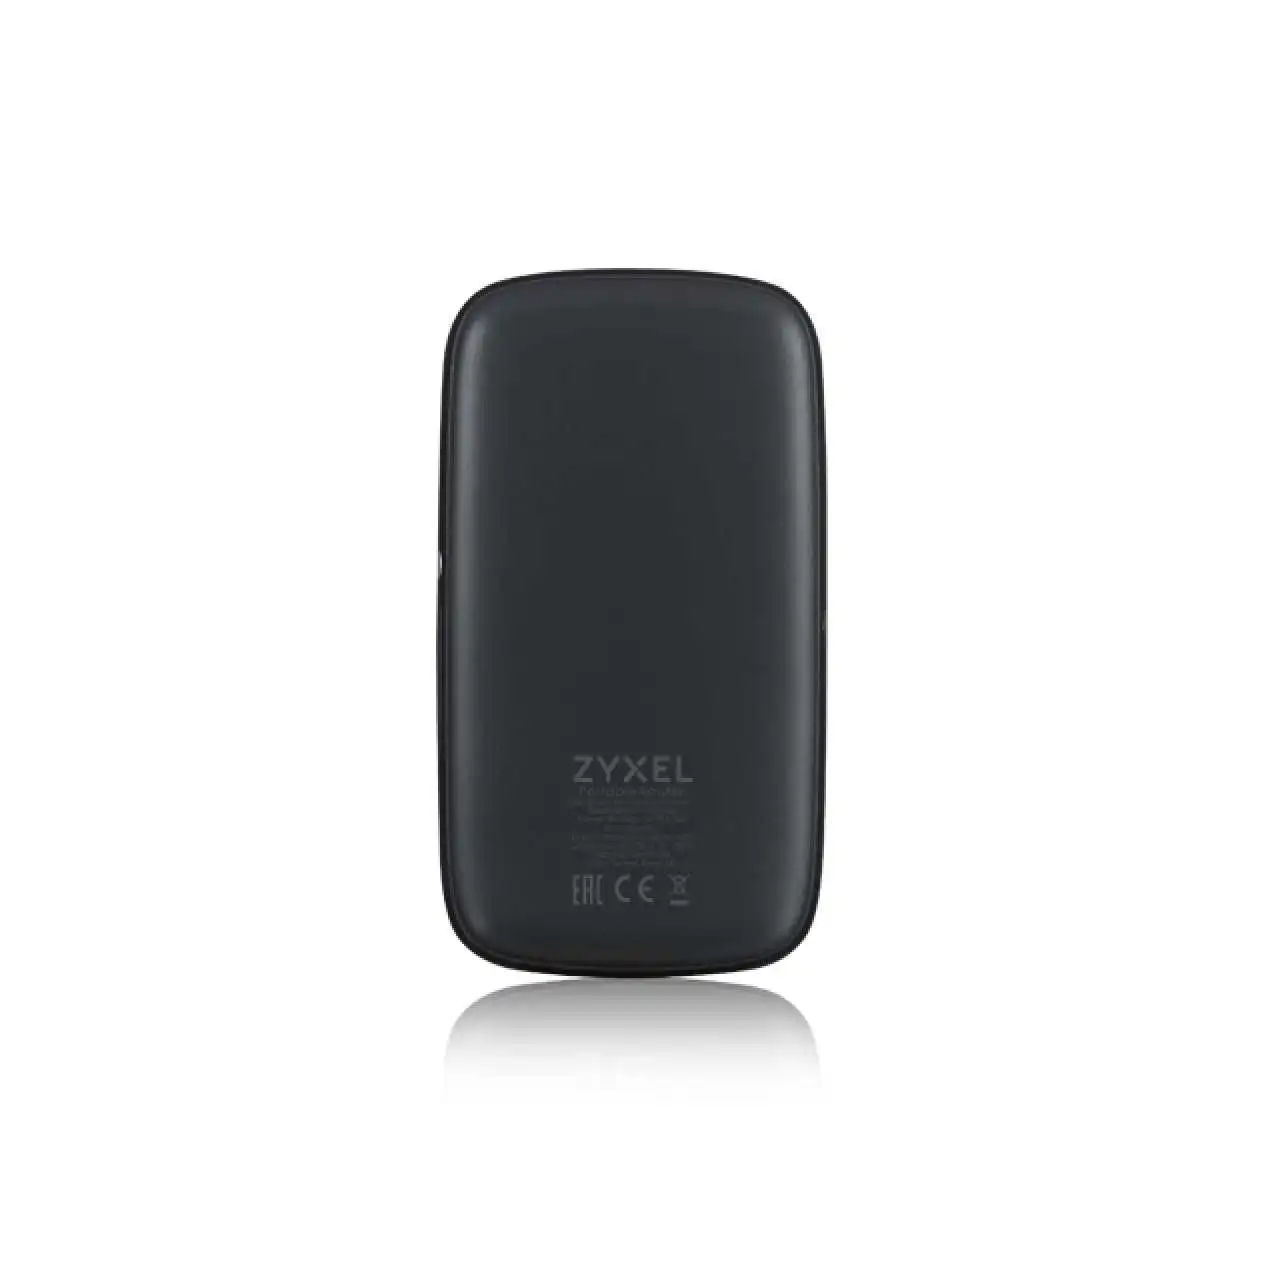 zyxel-lte2566-m634-4g-lte-a-moble-wifi-ürün-resmi-thumbnail